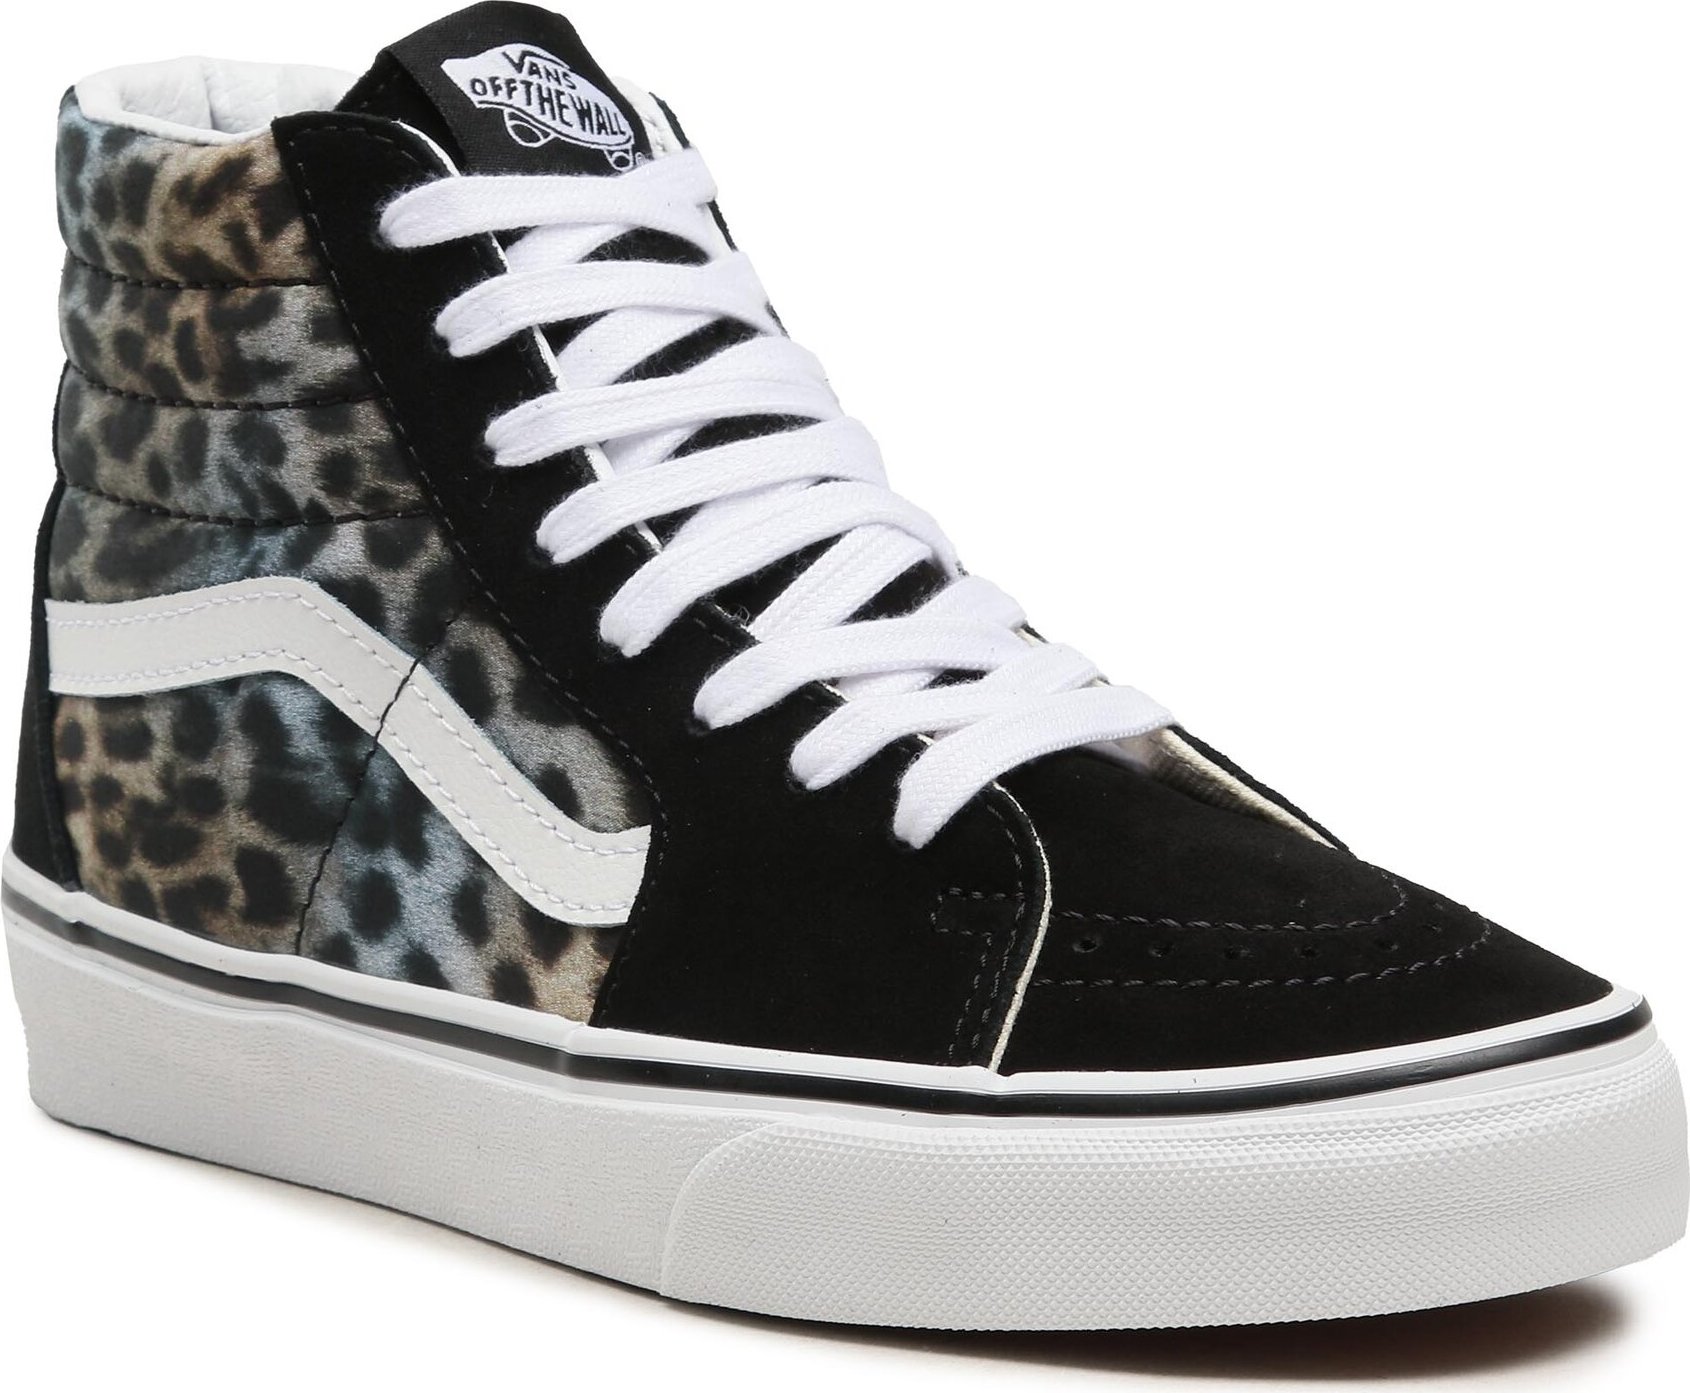 Sneakersy Vans Sk8-Hi VN0A32QG9NO1 Black Cheetah